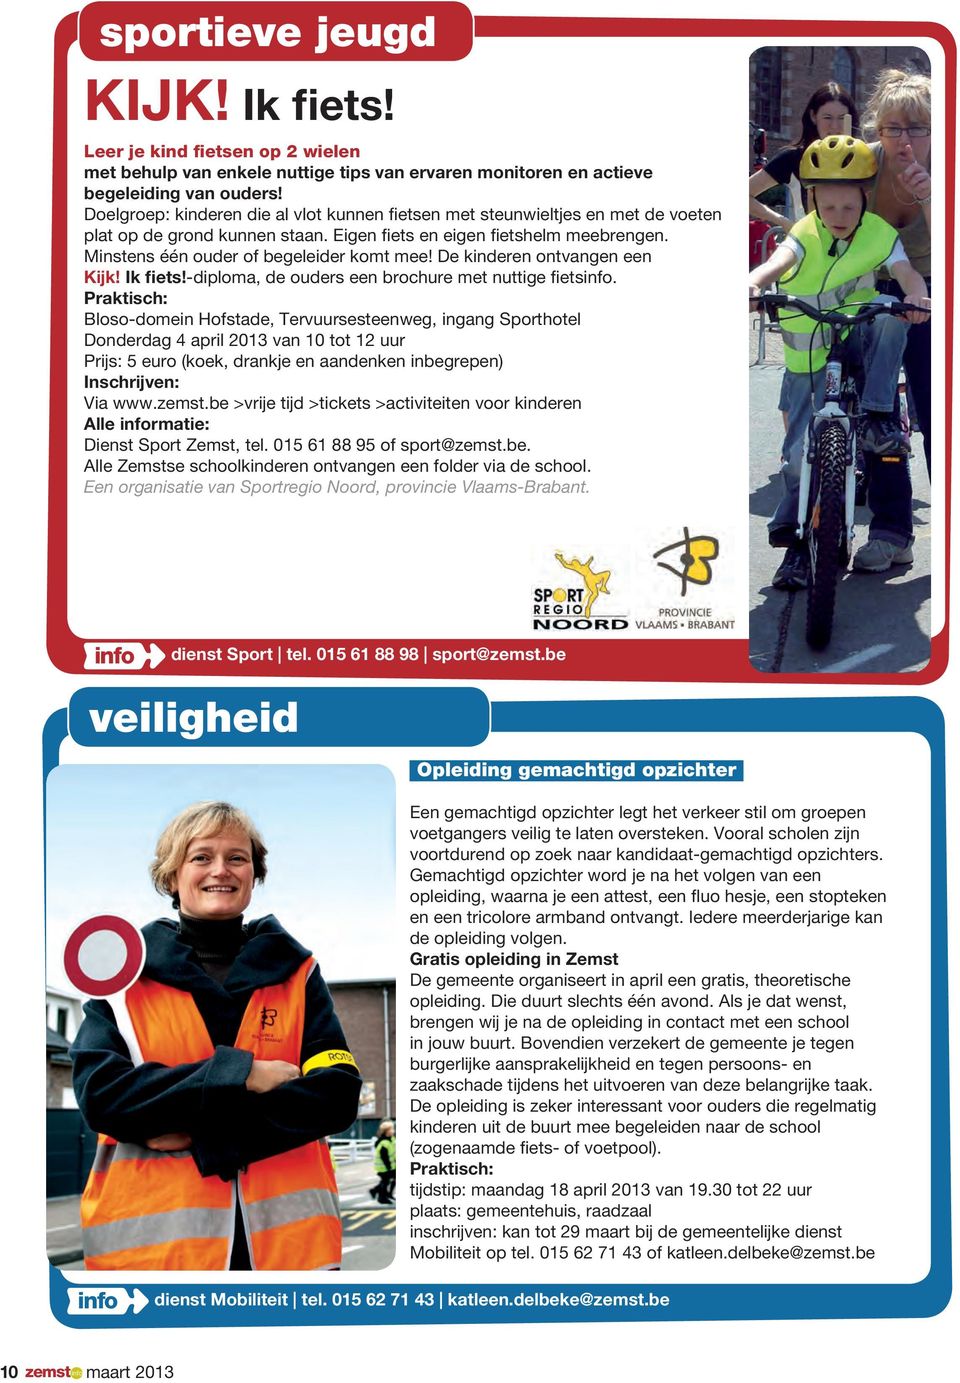 De kinderen ontvangen een Kijk! Ik fiets!-diploma, de ouders een brochure met nuttige fiets.